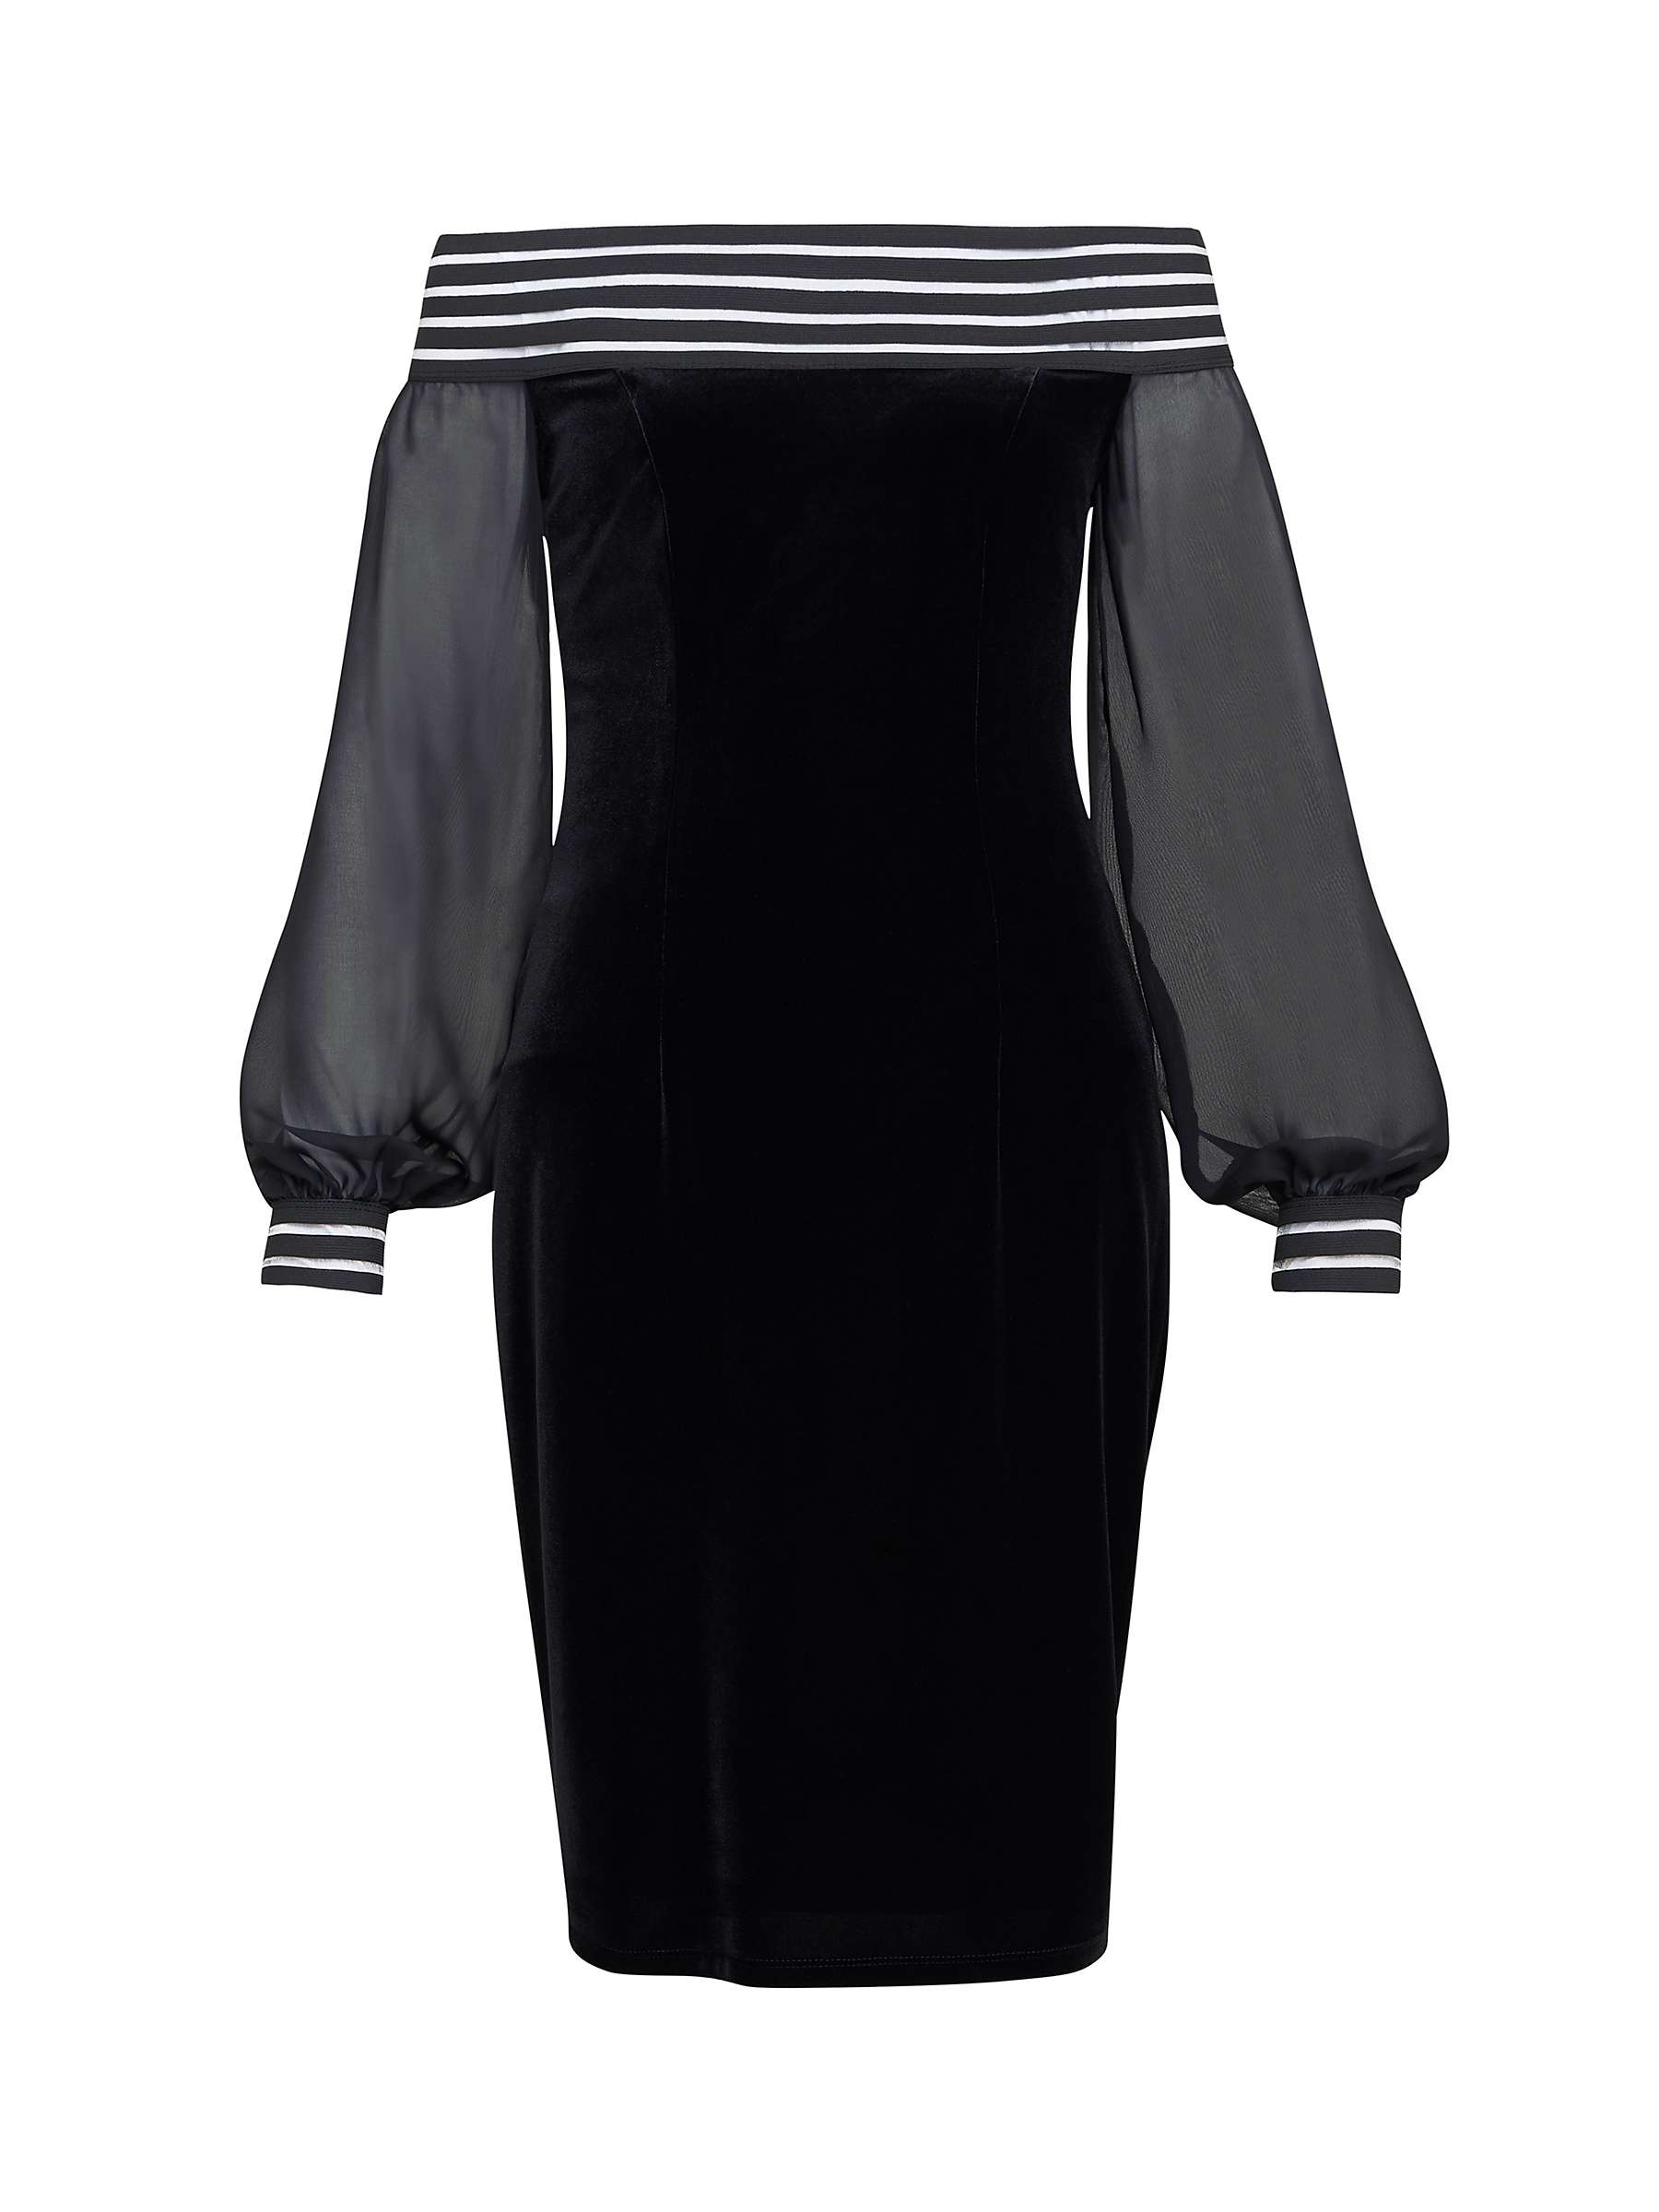 Buy Gina Bacconi Taylor Velvet Off The Shoulder Dress, Black Online at johnlewis.com